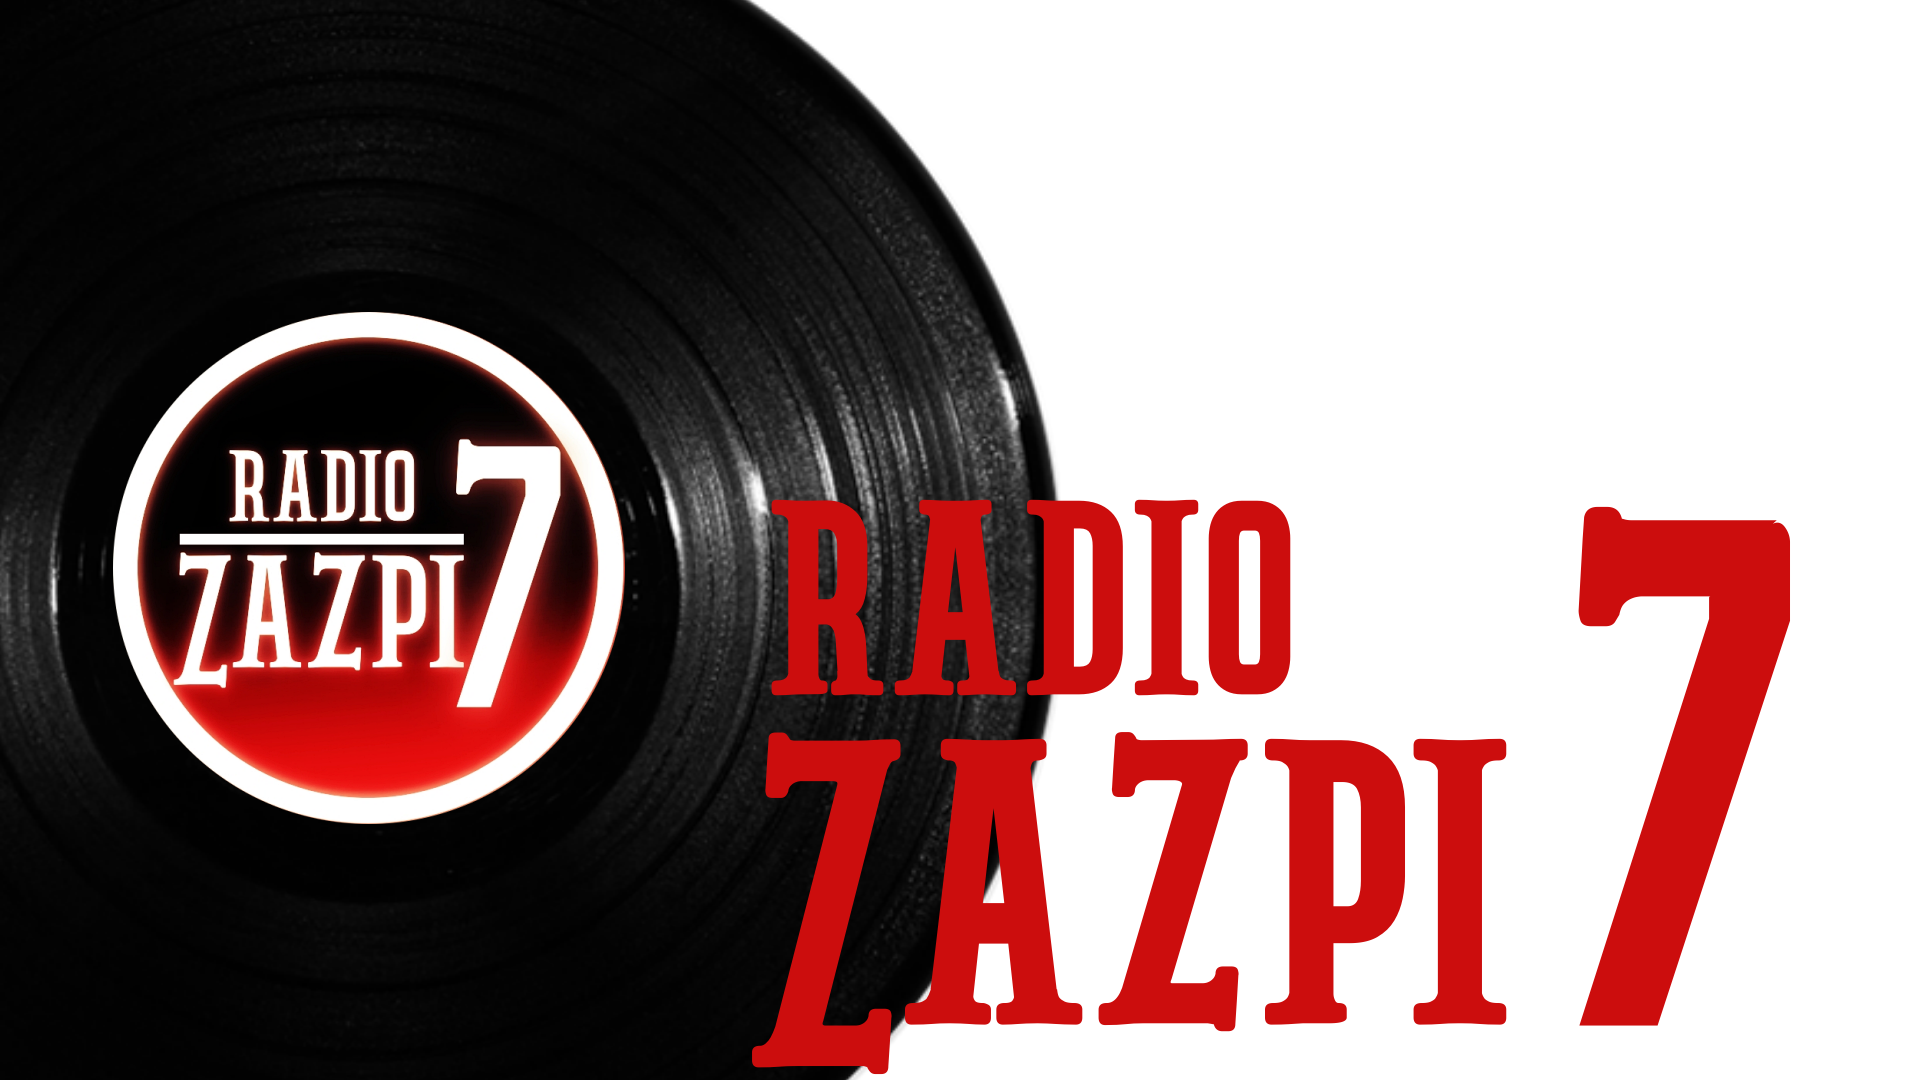 Radio-Zazpi